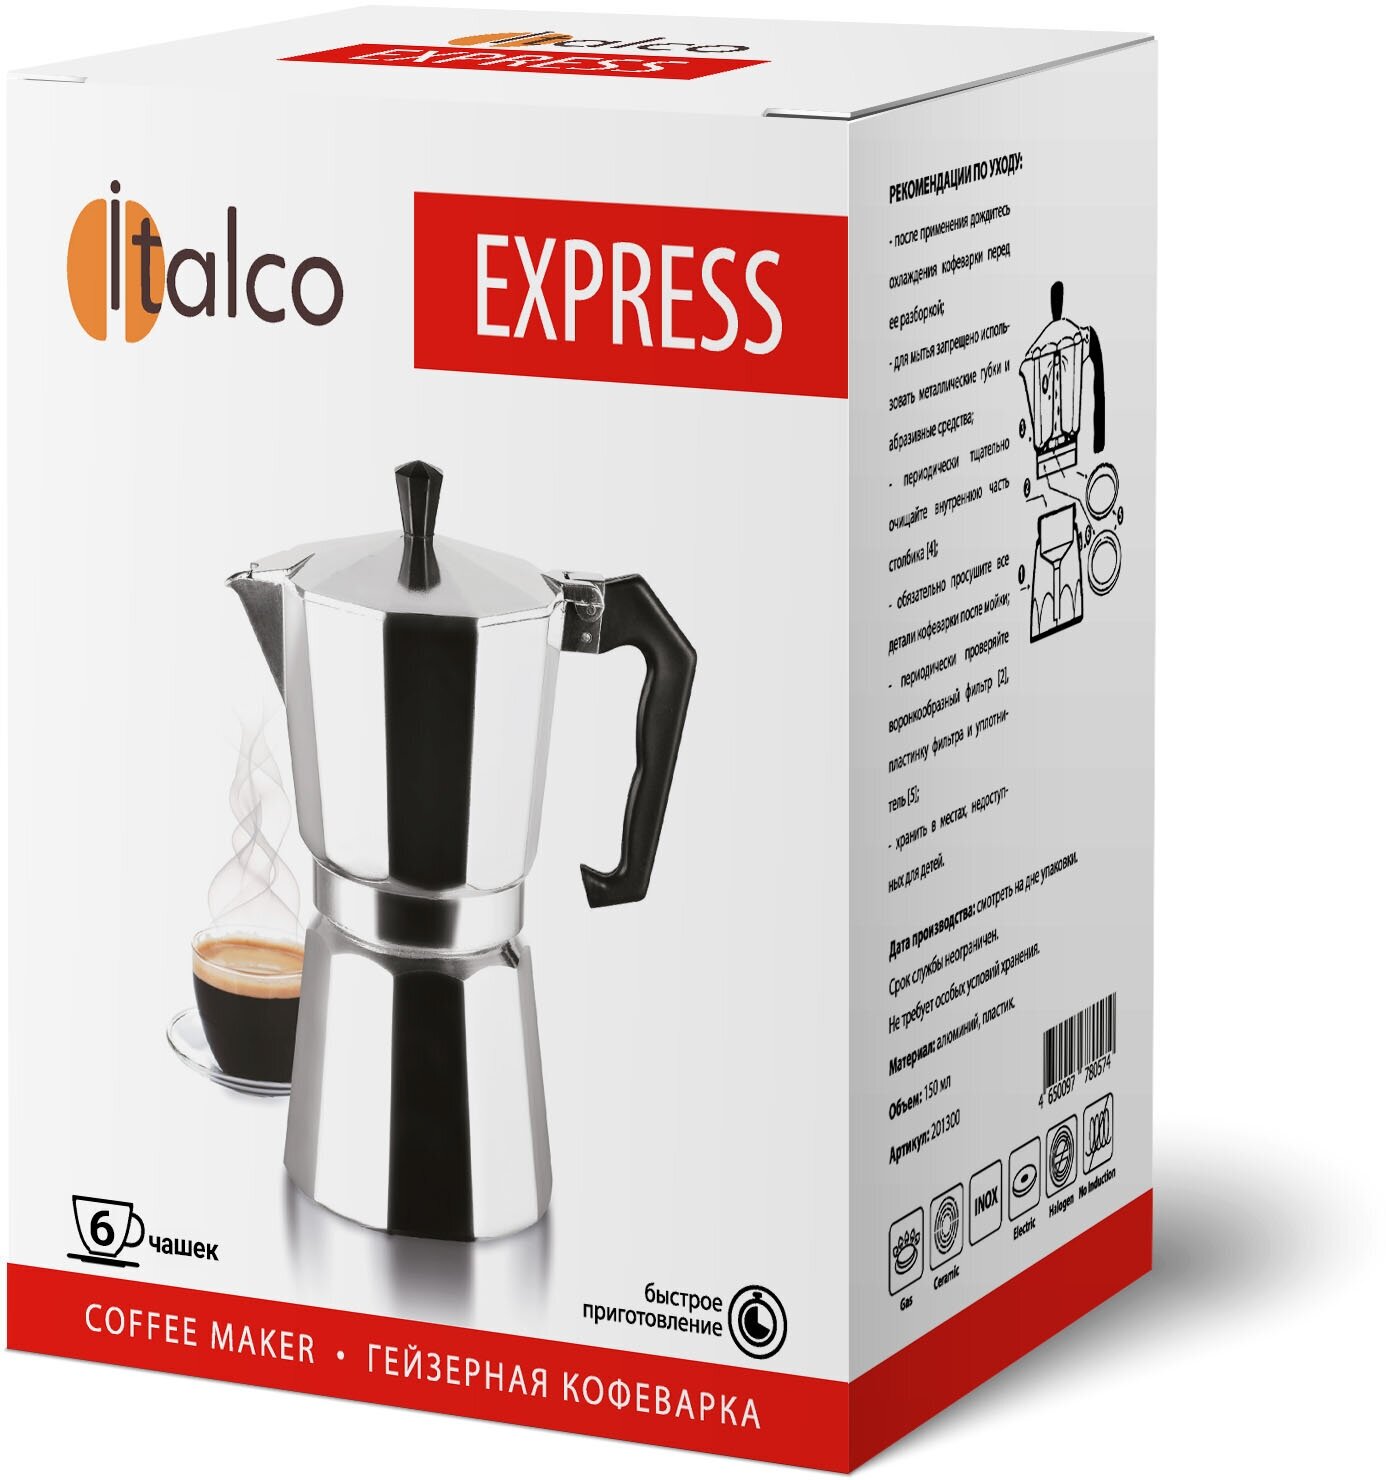 Гейзерная кофеварка Italco EXPRESS 6 порций